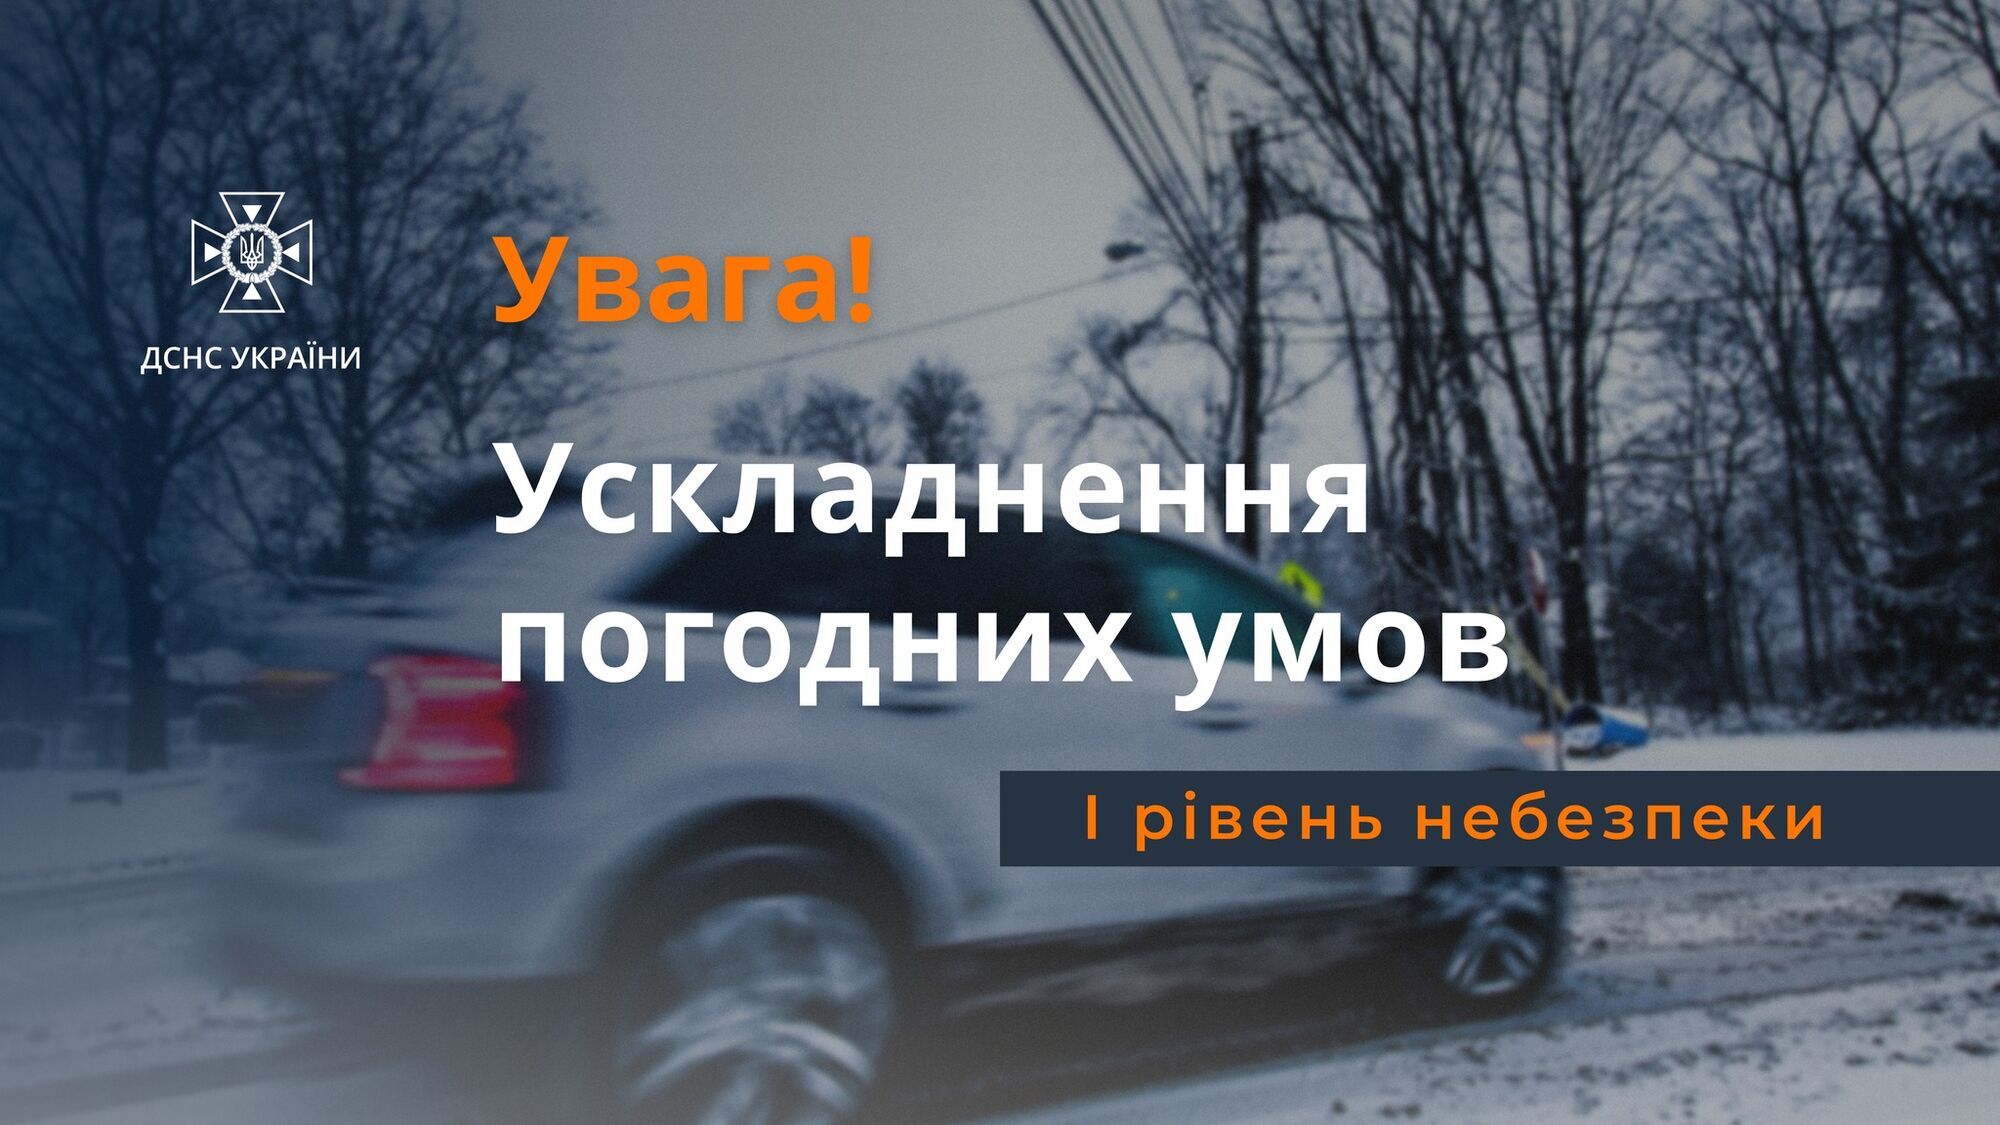 Синоптики предупредили о сложных погодных условиях в Киеве и области 22 ноября